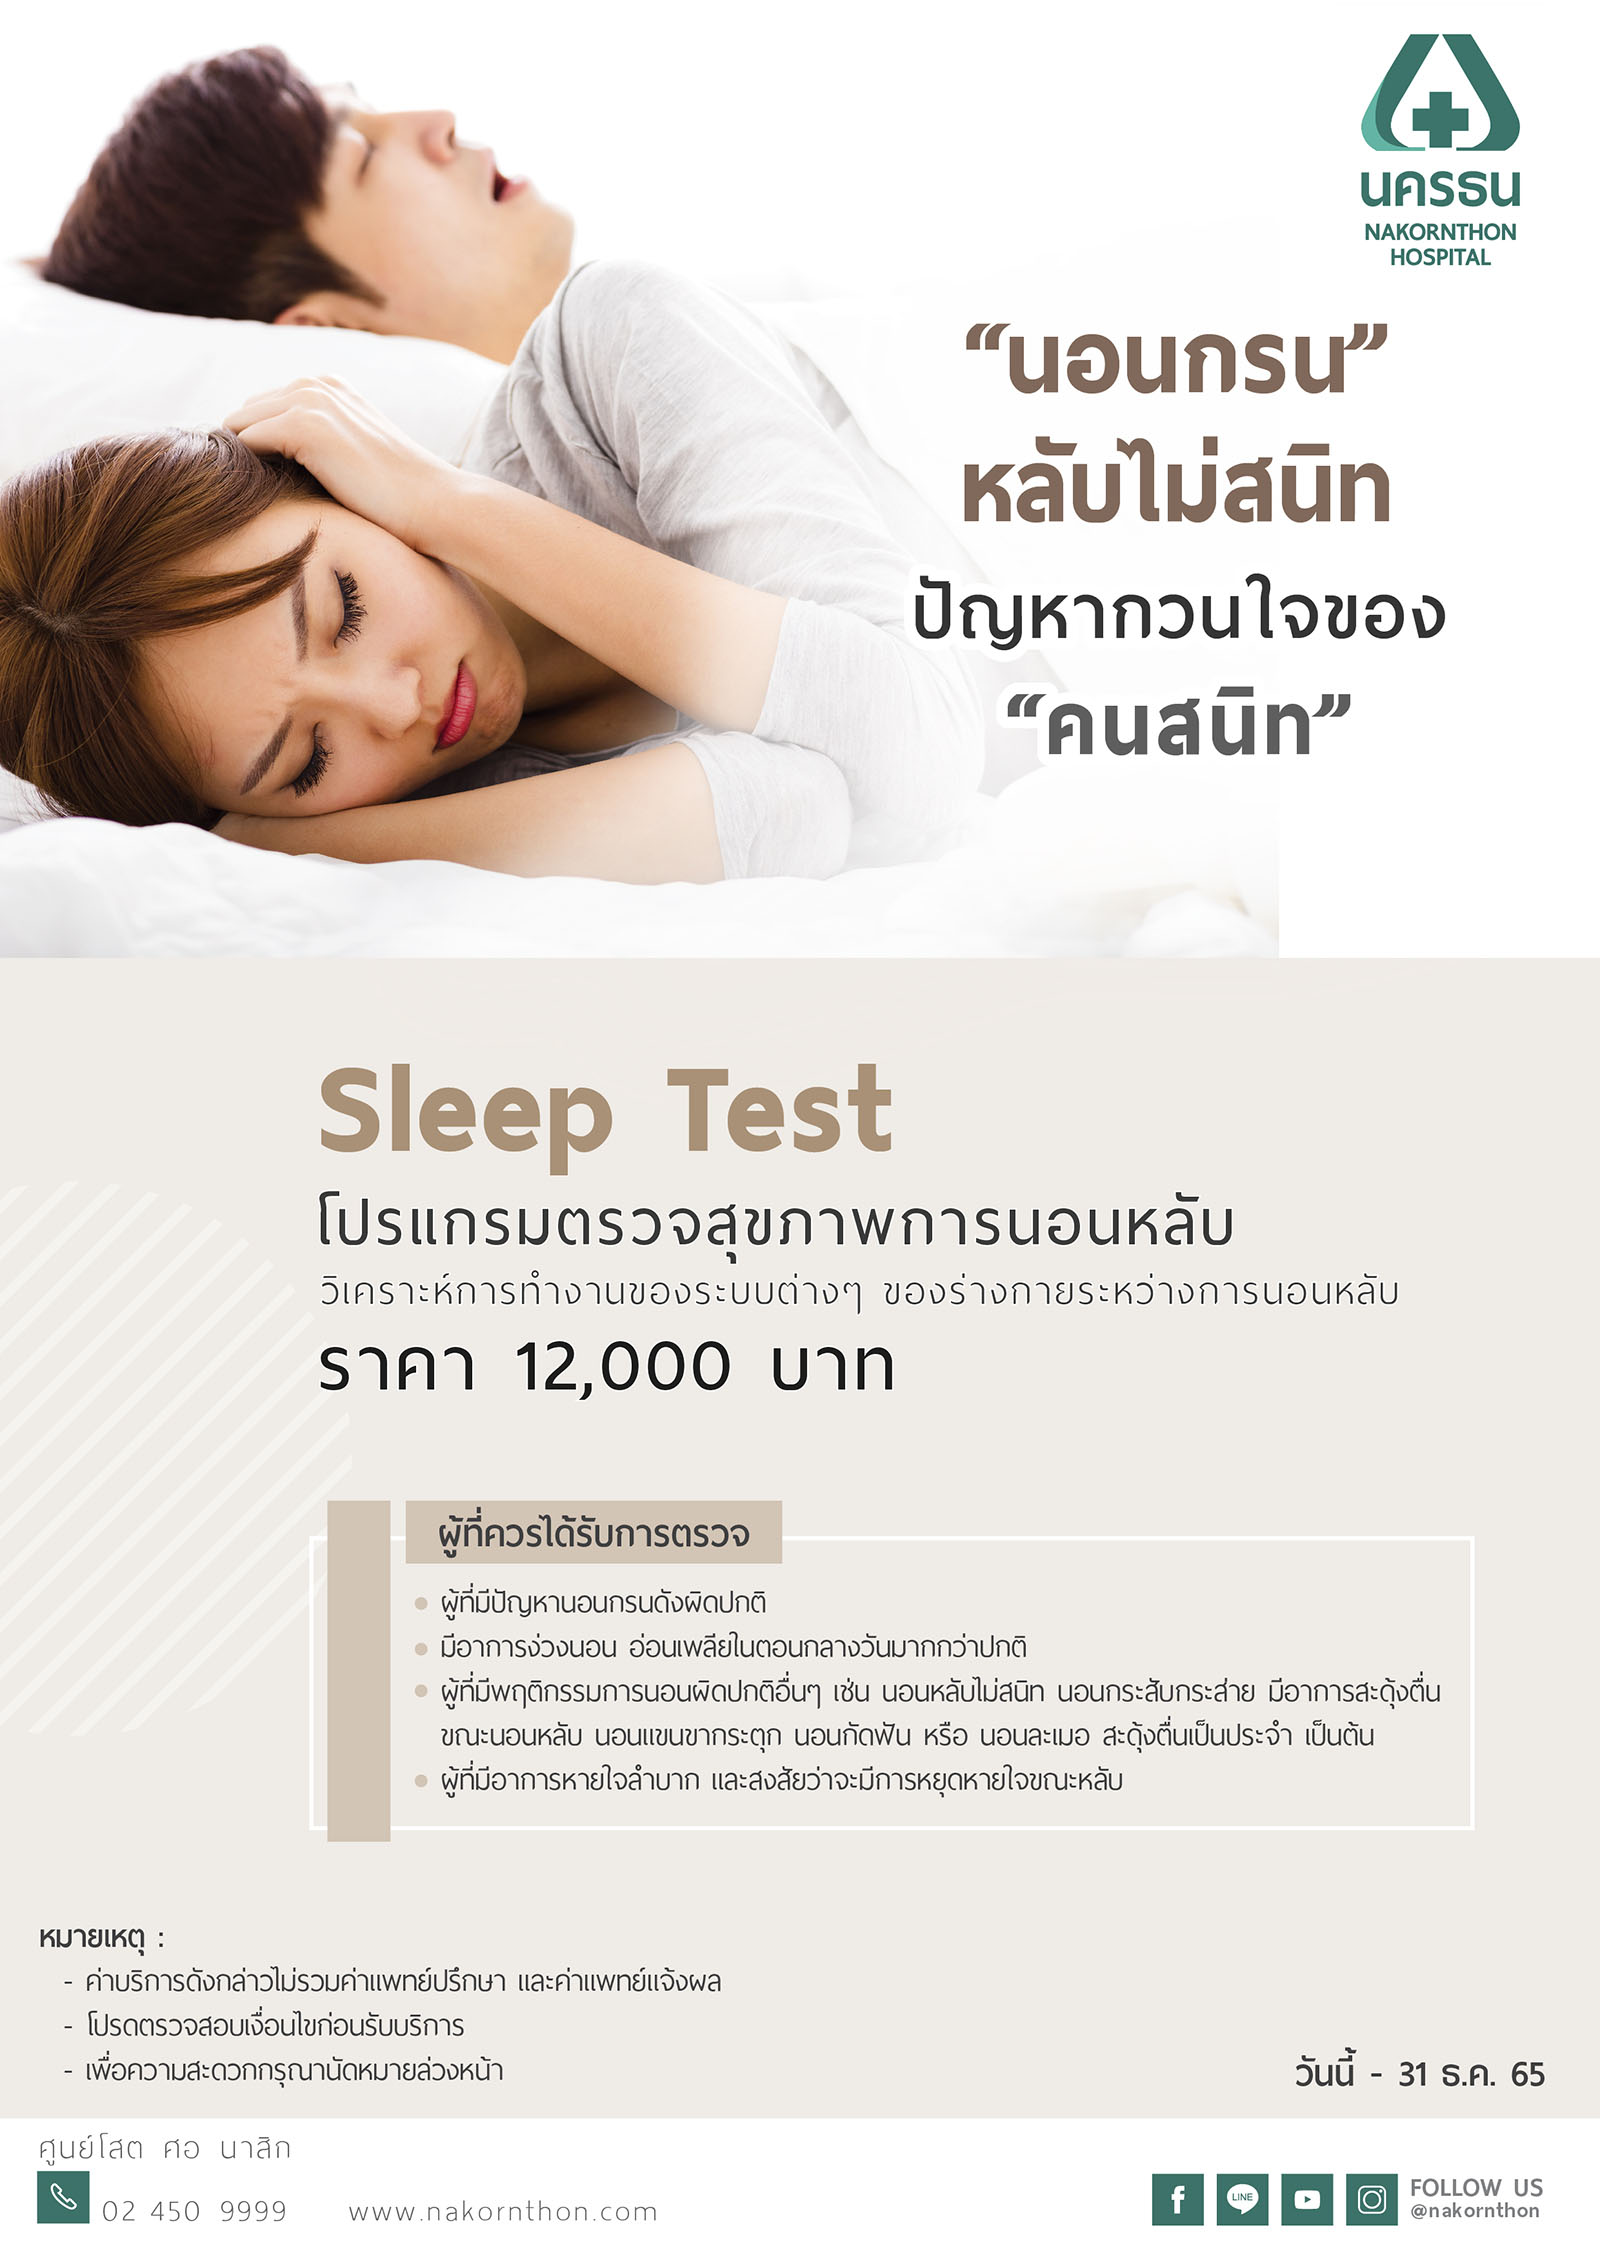 โปรแกรมตรวจสุขภาพการนอนหลับ Sleep Test